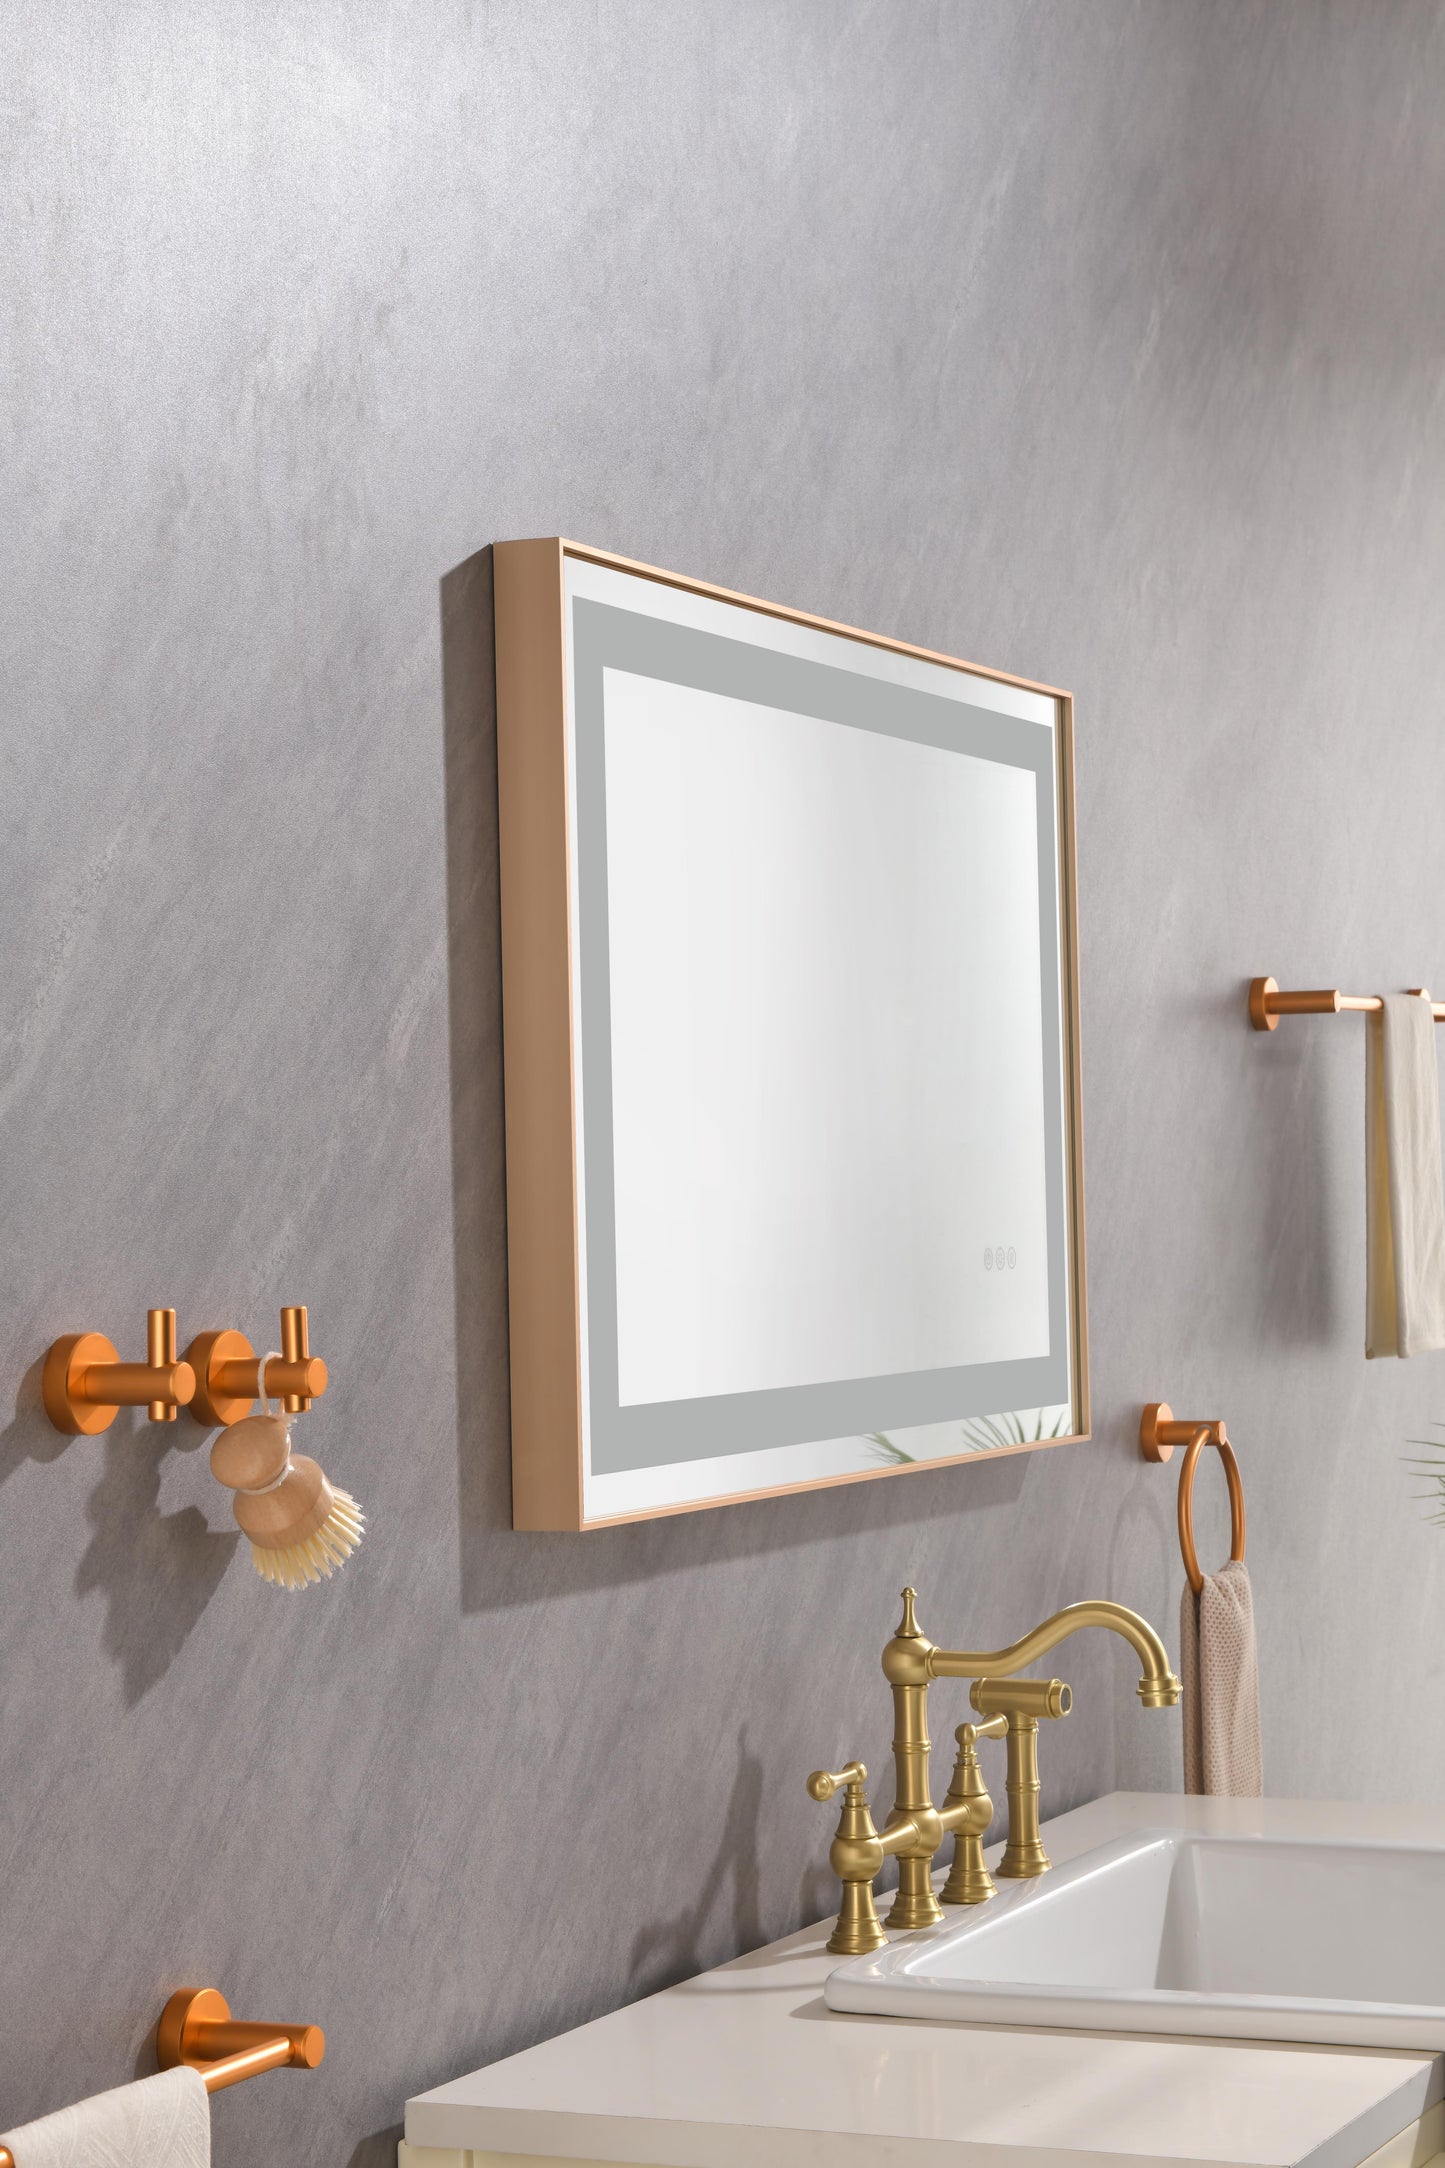 LED Rectangular Gold Framed Anti-Fog Bathroom Mirror Front Light